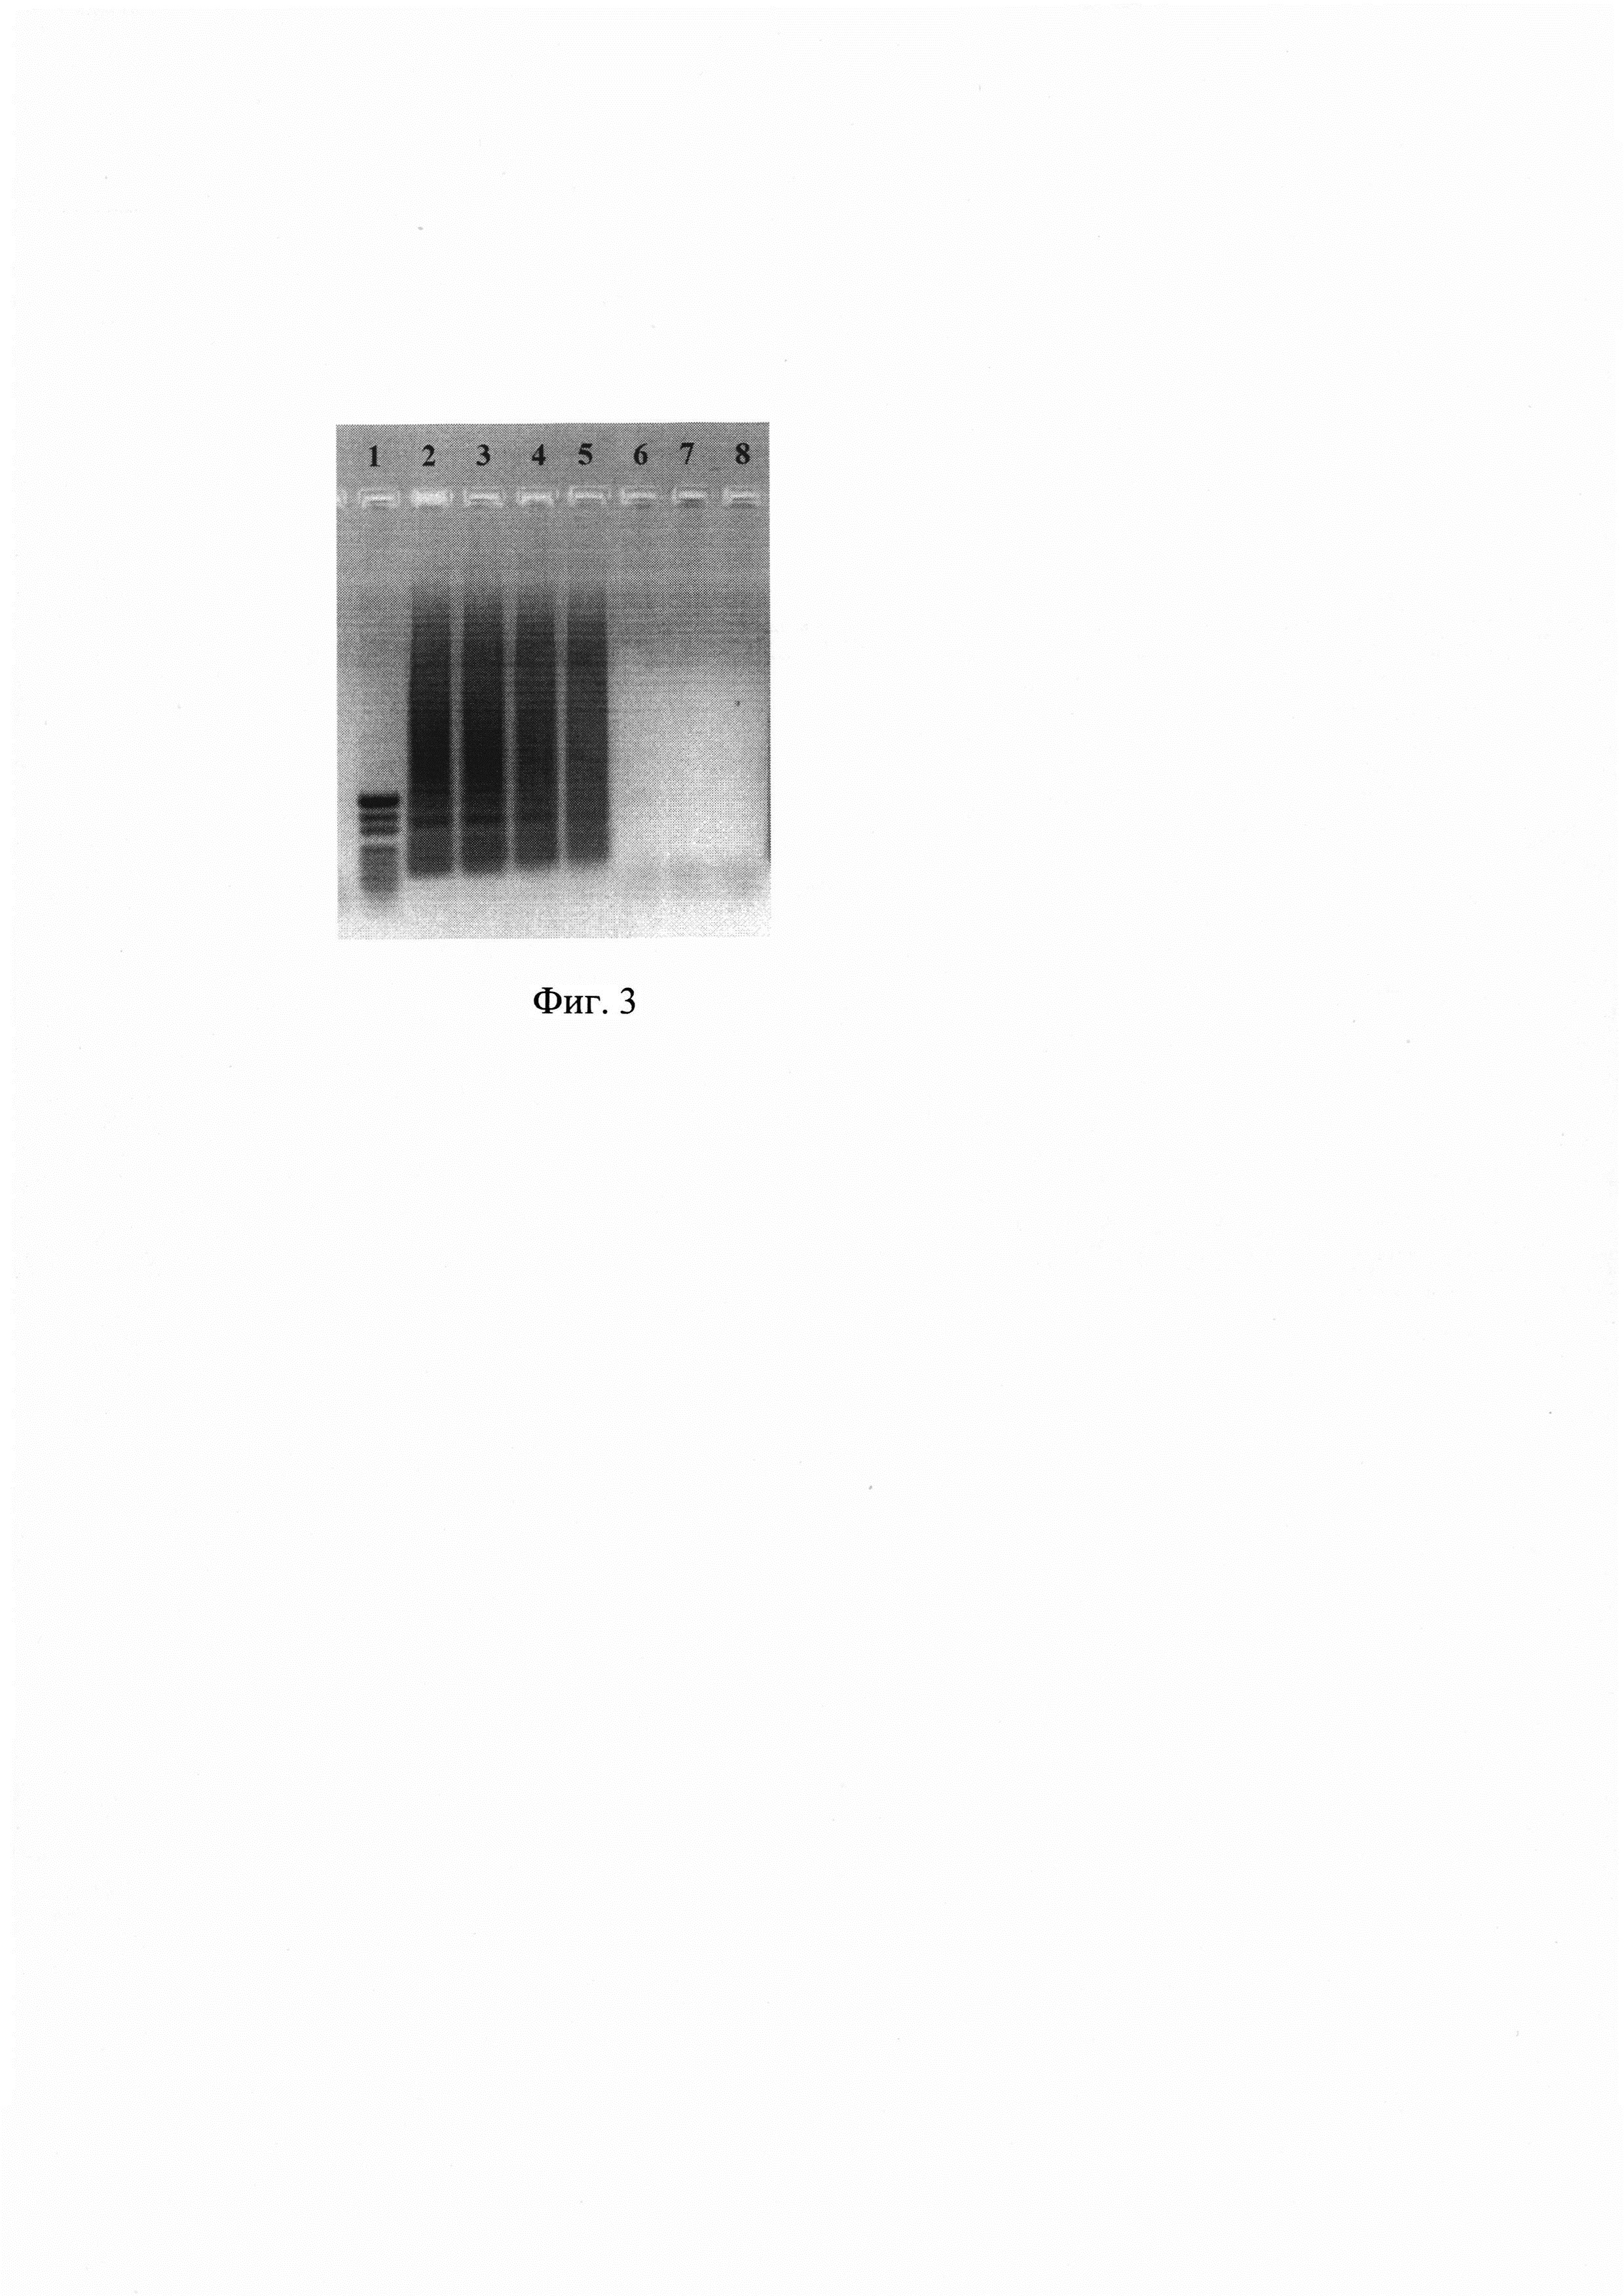 Набор олигонуклеотидных праймеров Ft 182 и способ определения бактерий Francisella tularensis (Варианты)